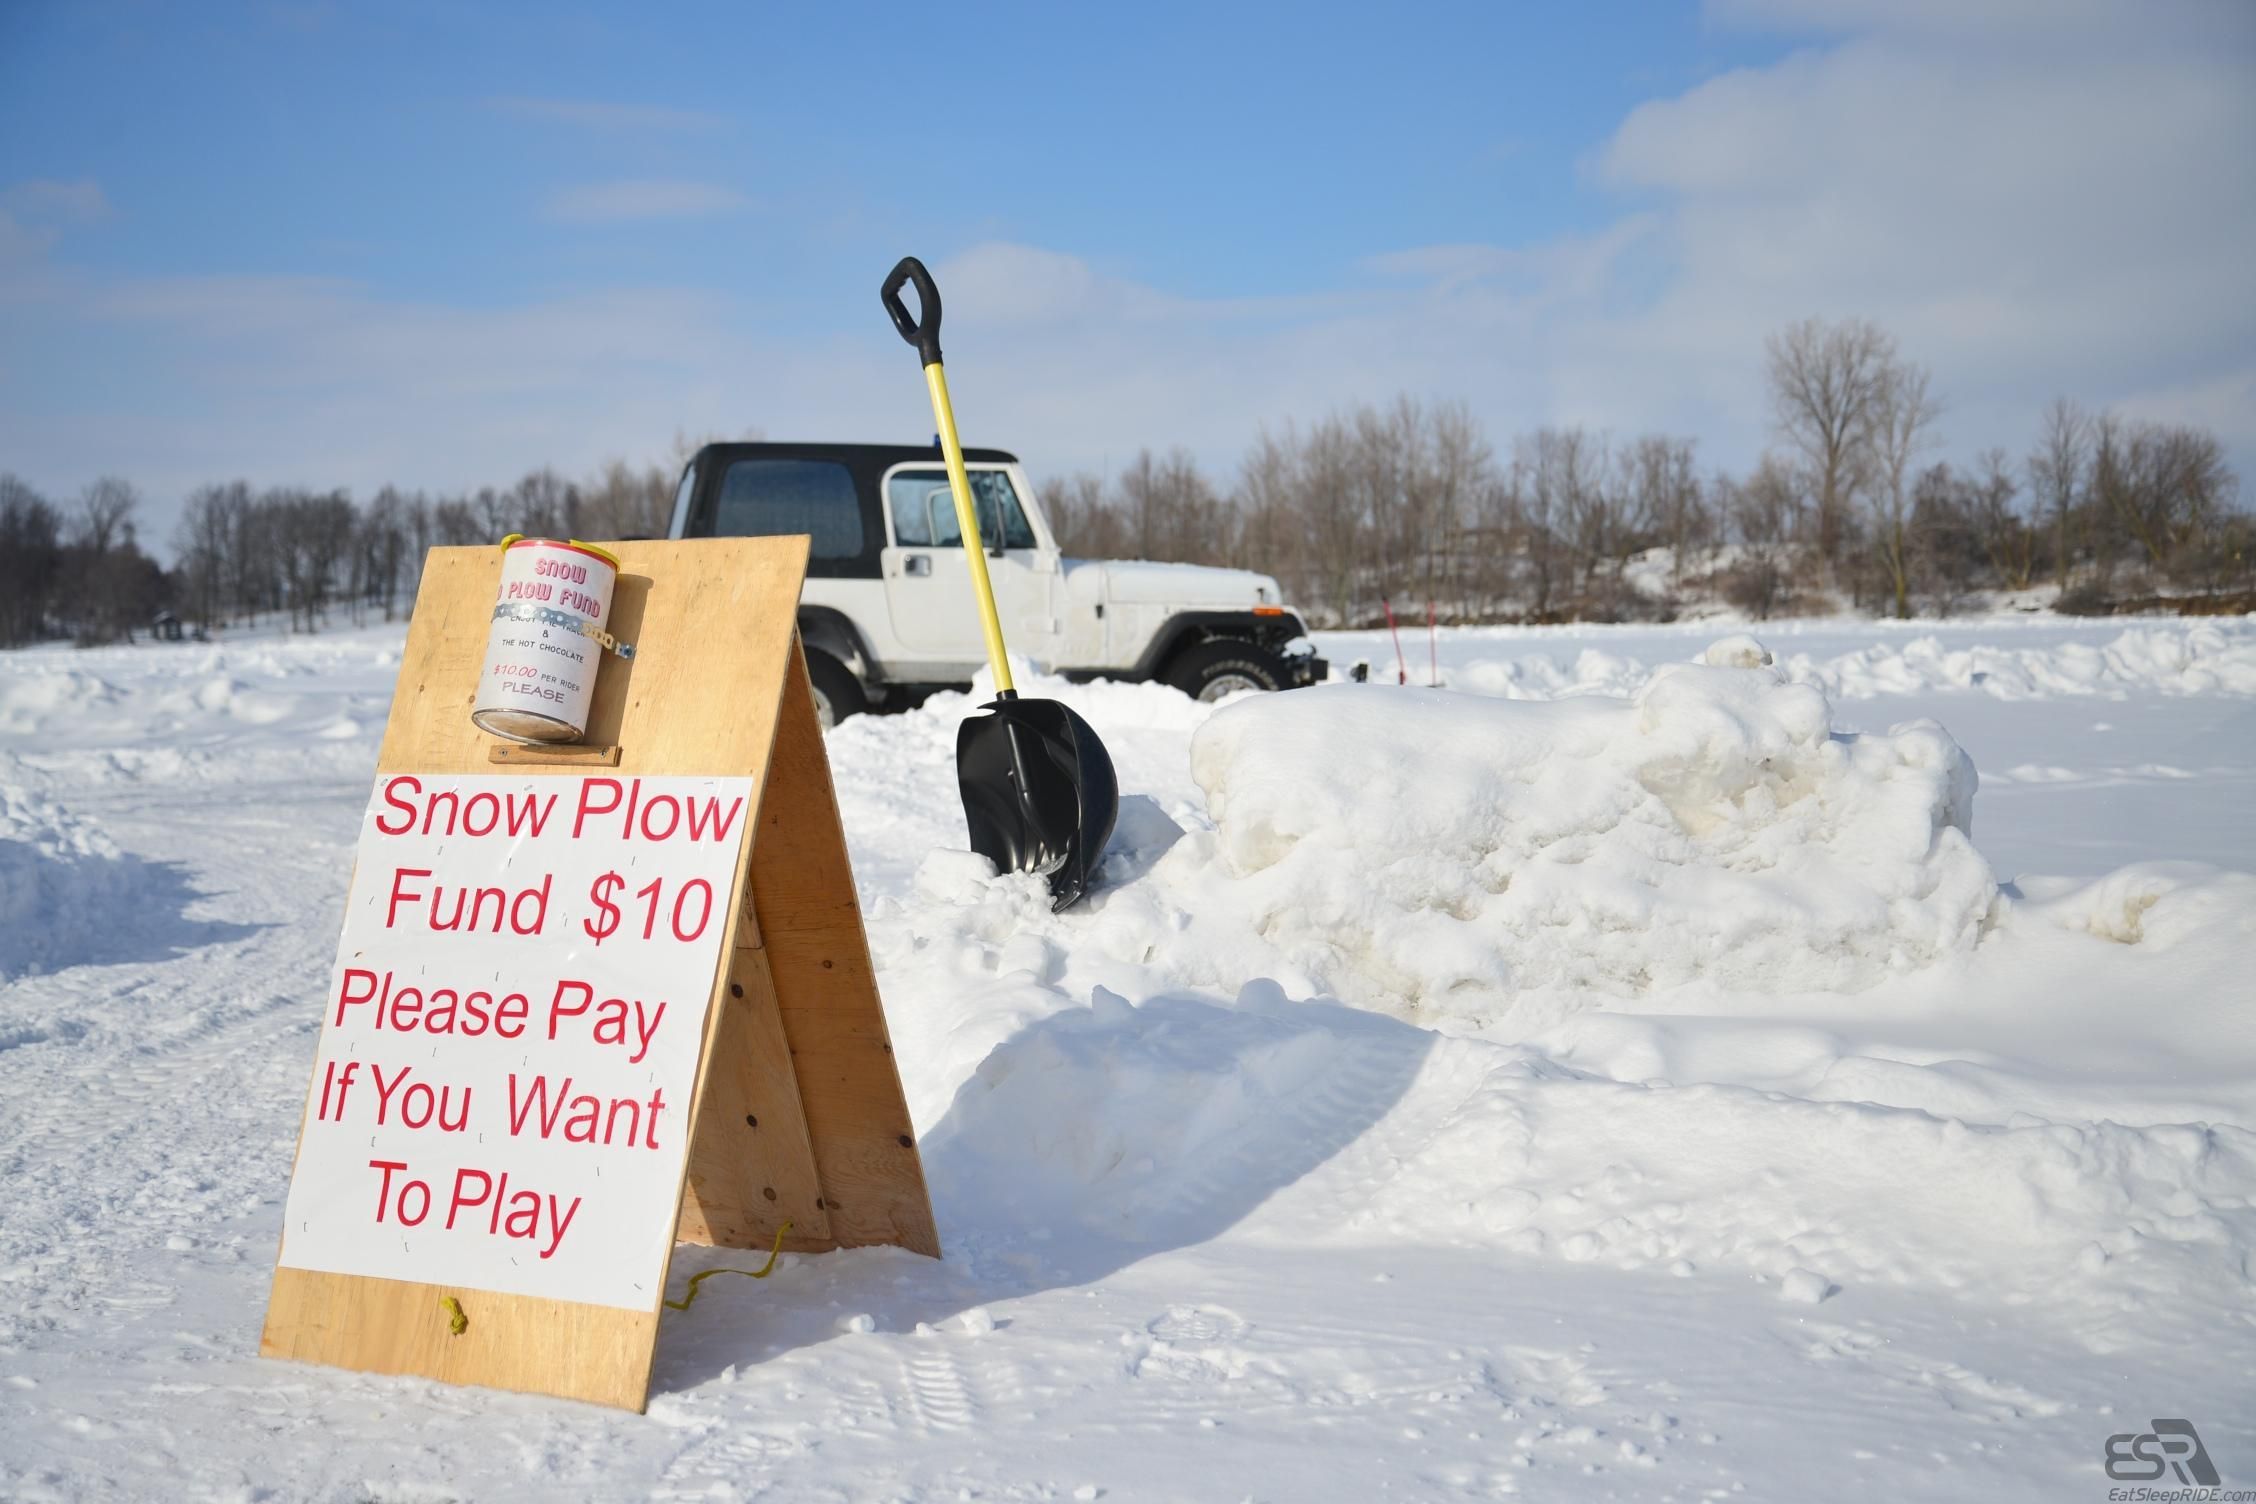 Snow Plow Fund - Ice riding